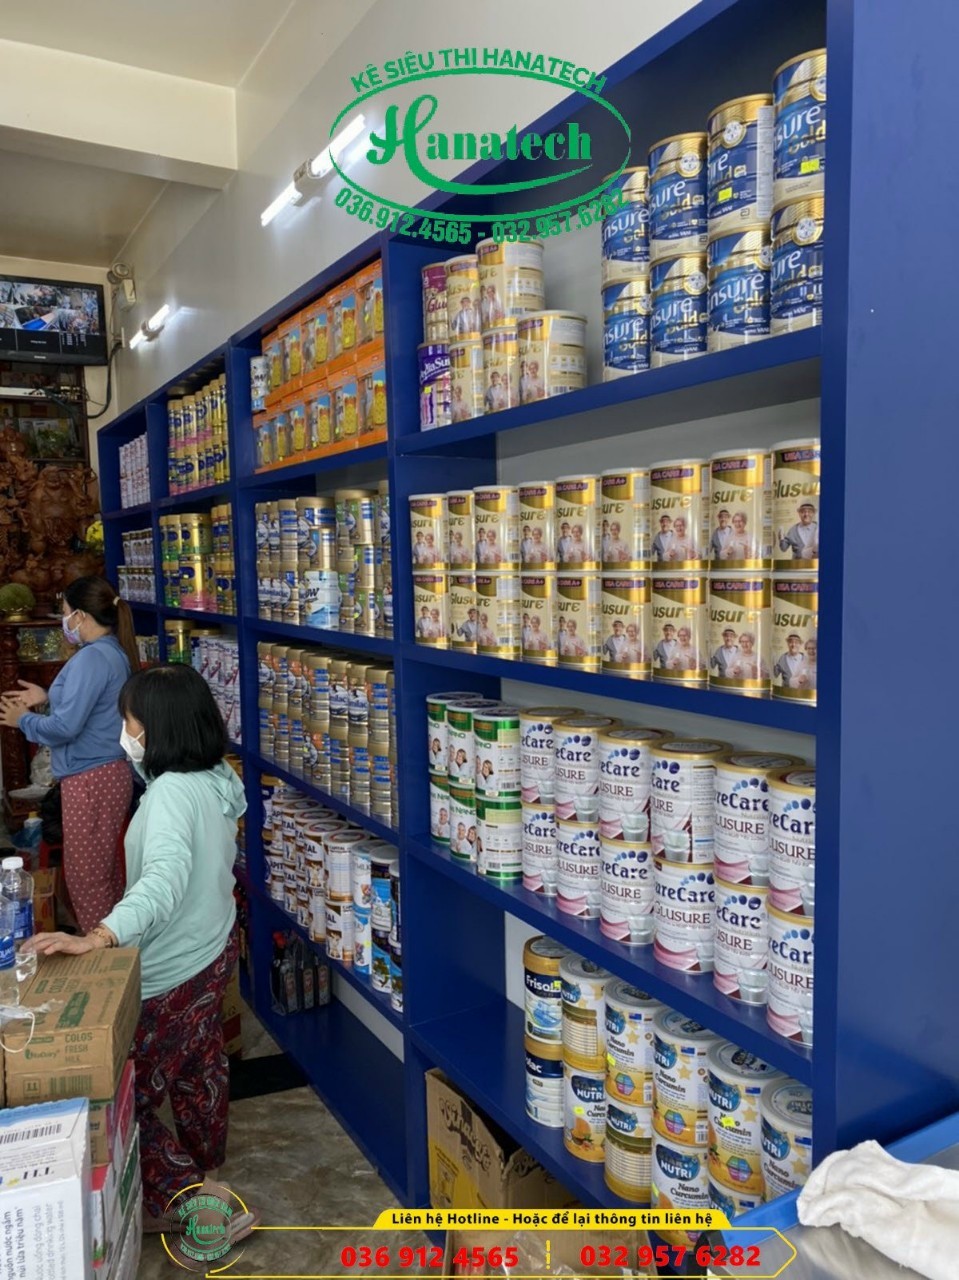 Giá kệ siêu thị trưng bày sản phẩm bán hàng tại Thuận An Bình Dương